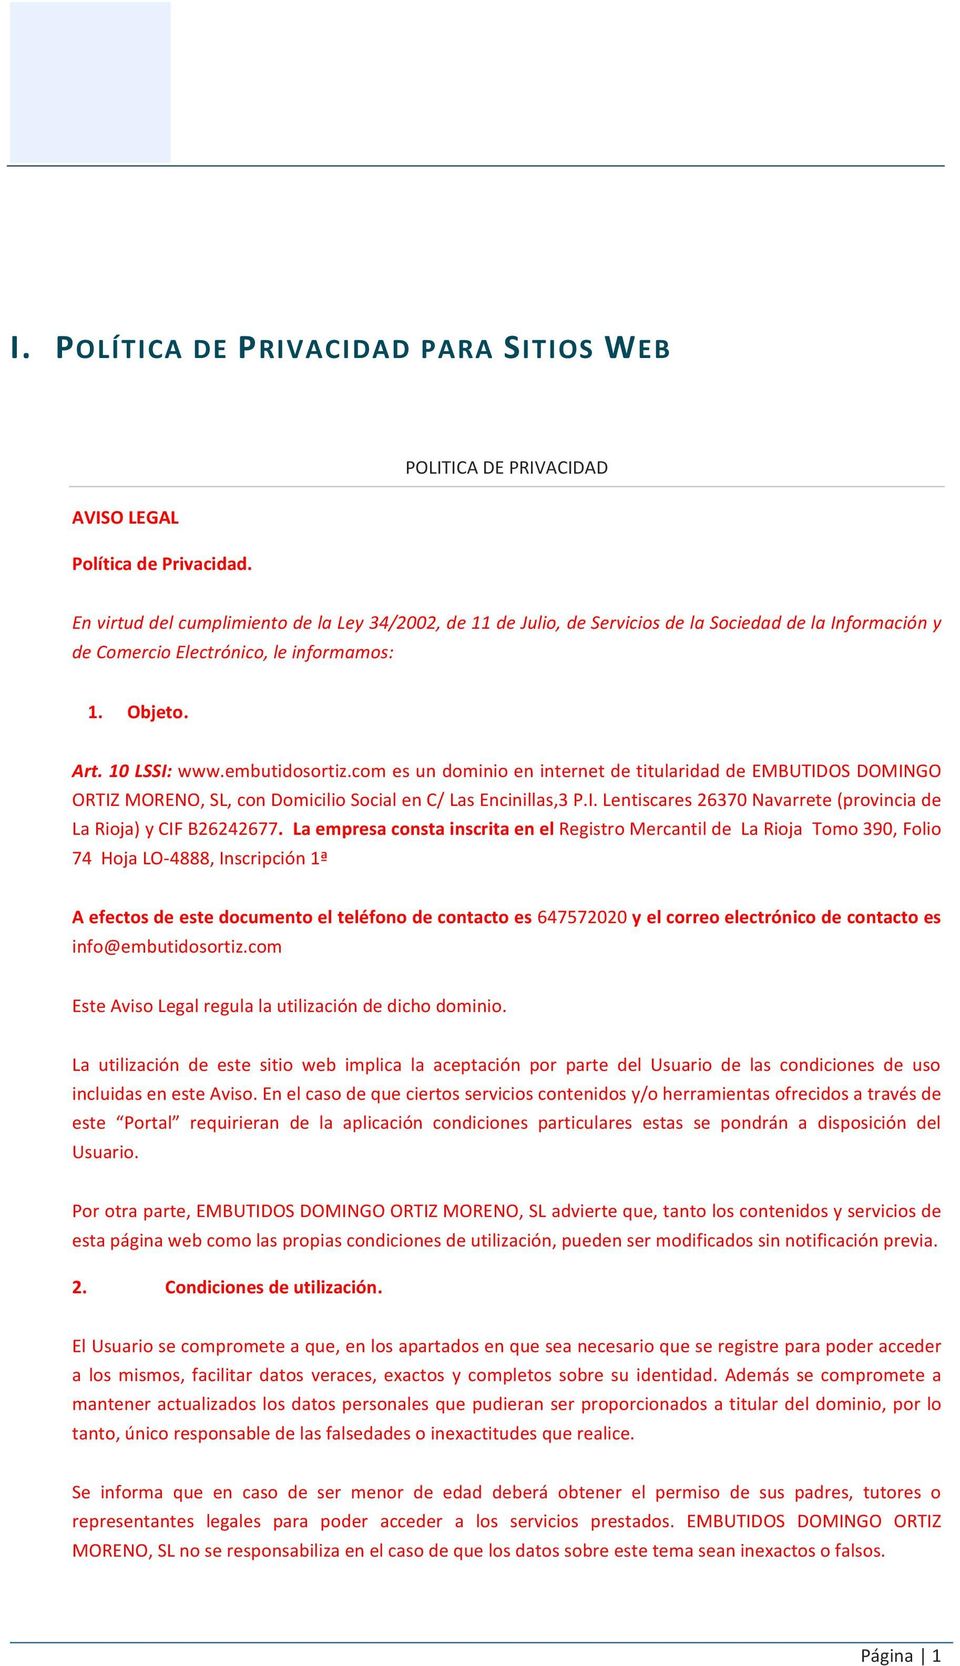 10 LSSI: www.embutidosortiz.com es un dominio en internet de titularidad de EMBUTIDOS DOMINGO ORTIZ MORENO, SL, con Domicilio Social en C/ Las Encinillas,3 P.I. Lentiscares 26370 Navarrete (provincia de La Rioja) y CIF B26242677.